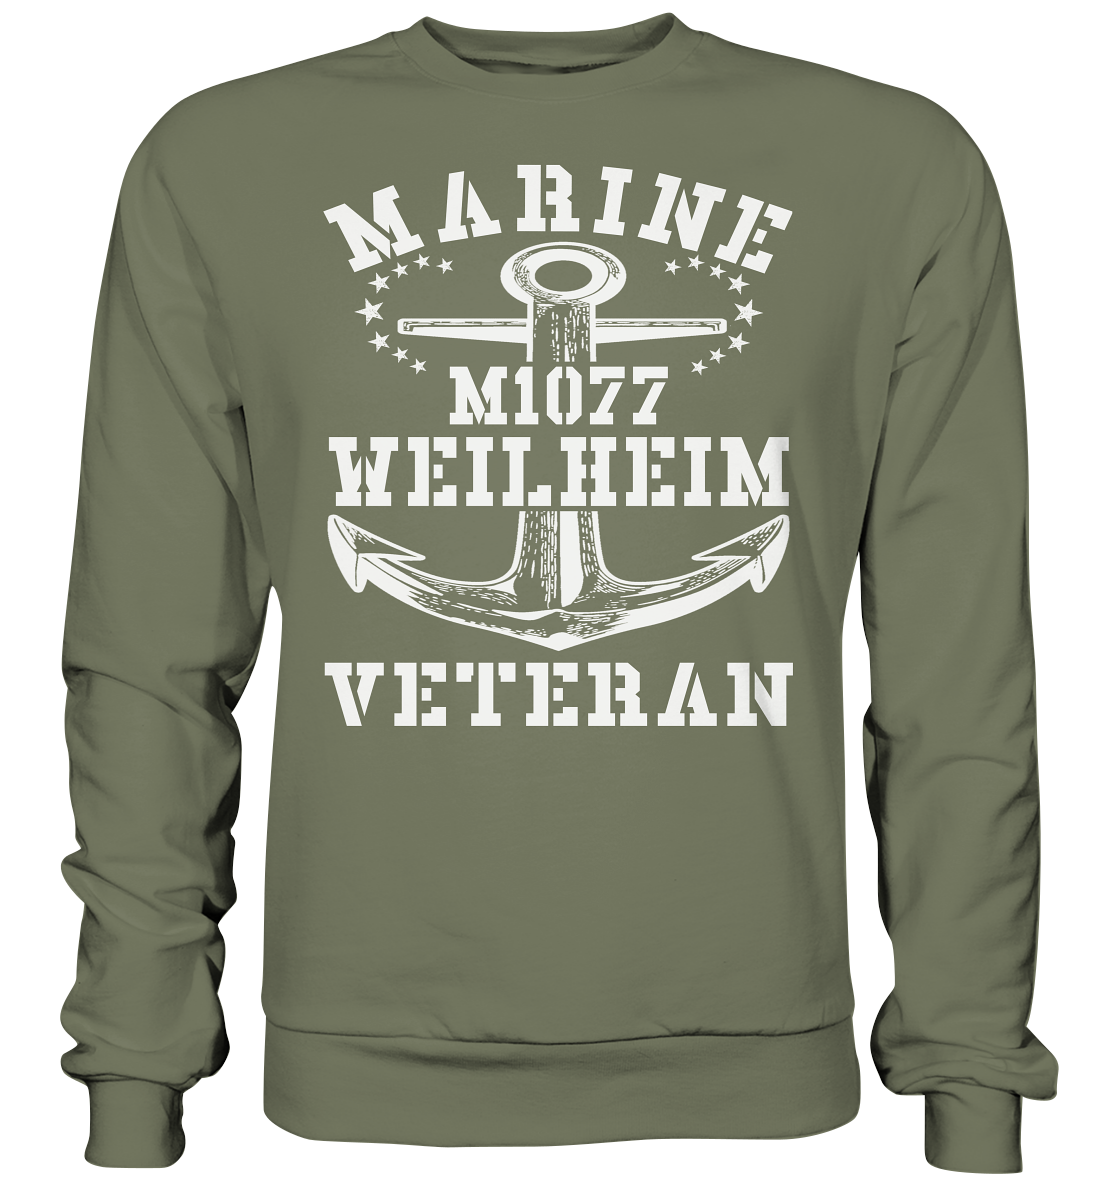 MARINE VETERAN M1077 WEILHEIM - Premium Sweatshirt